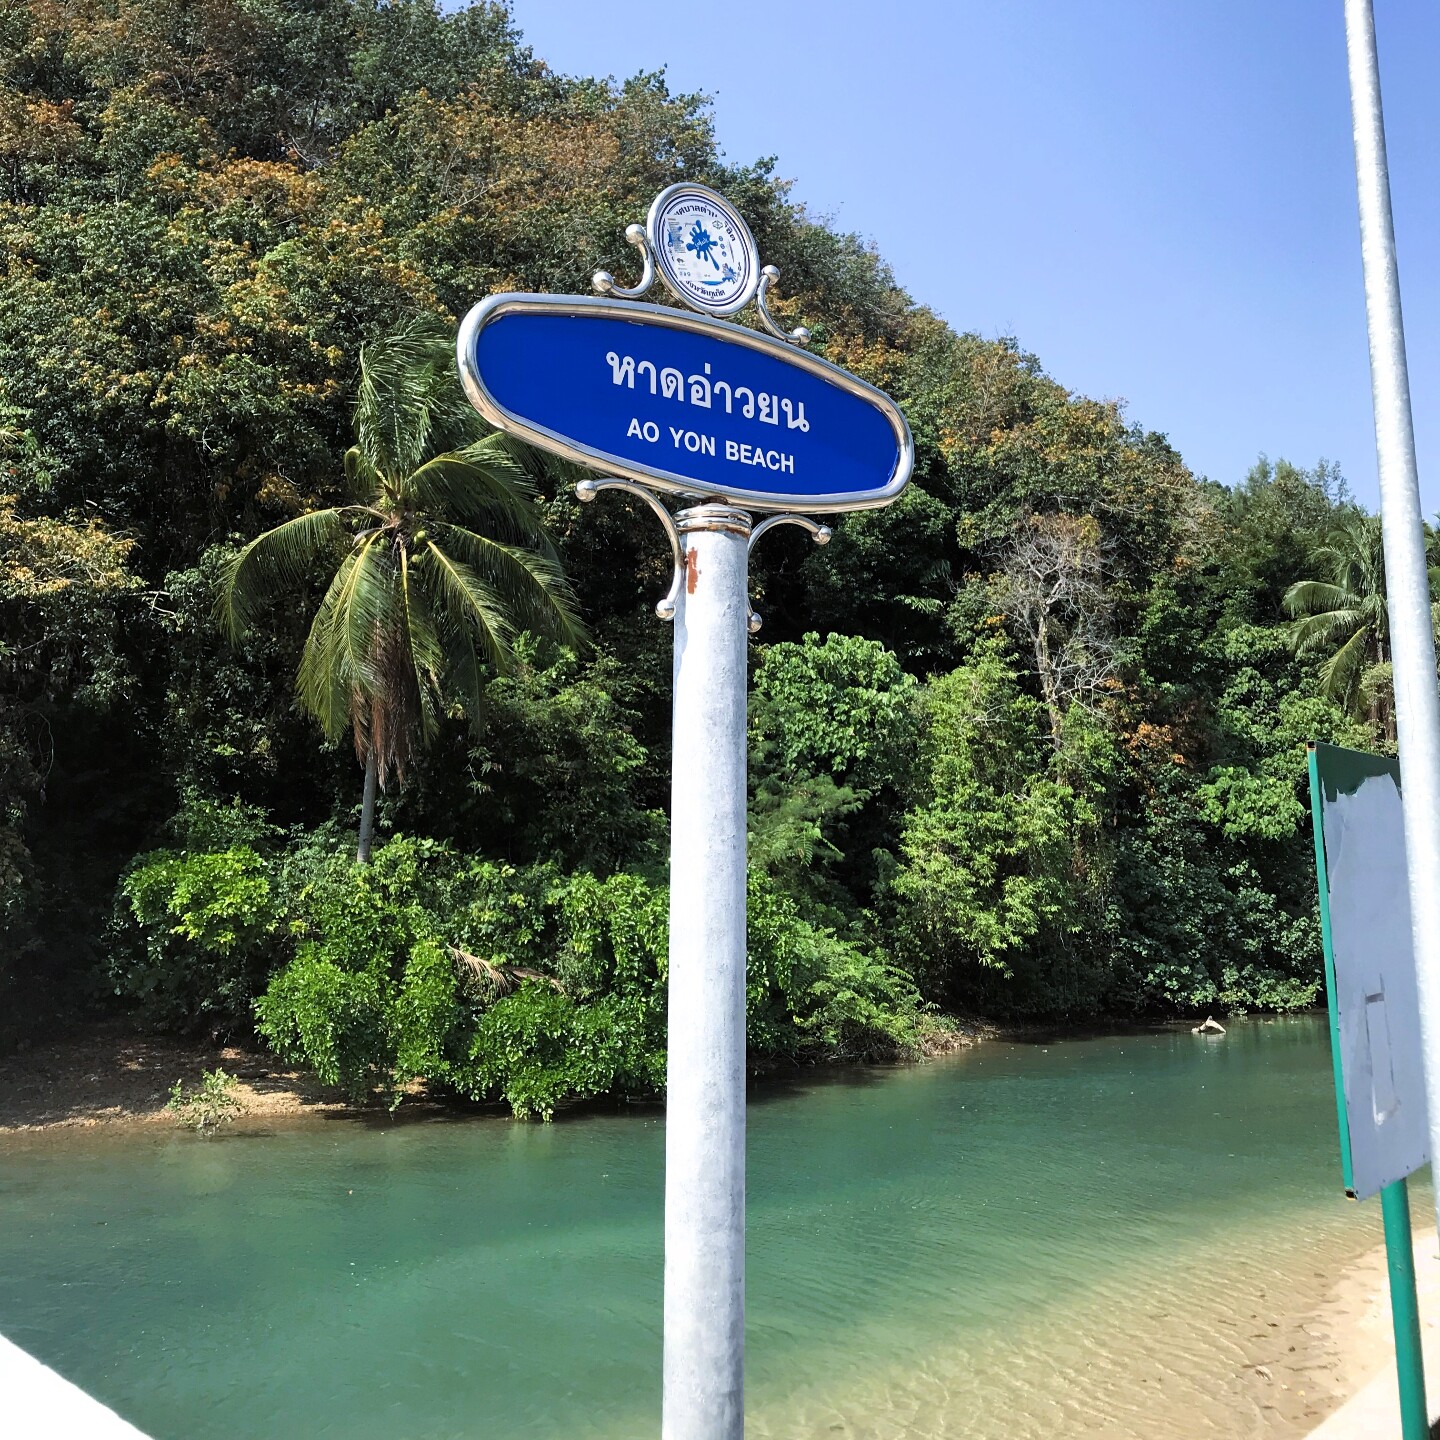 С пляжа Ао Йон можно прогуляться туристическим маршрутом сквозь джунгли к одноименному водопаду